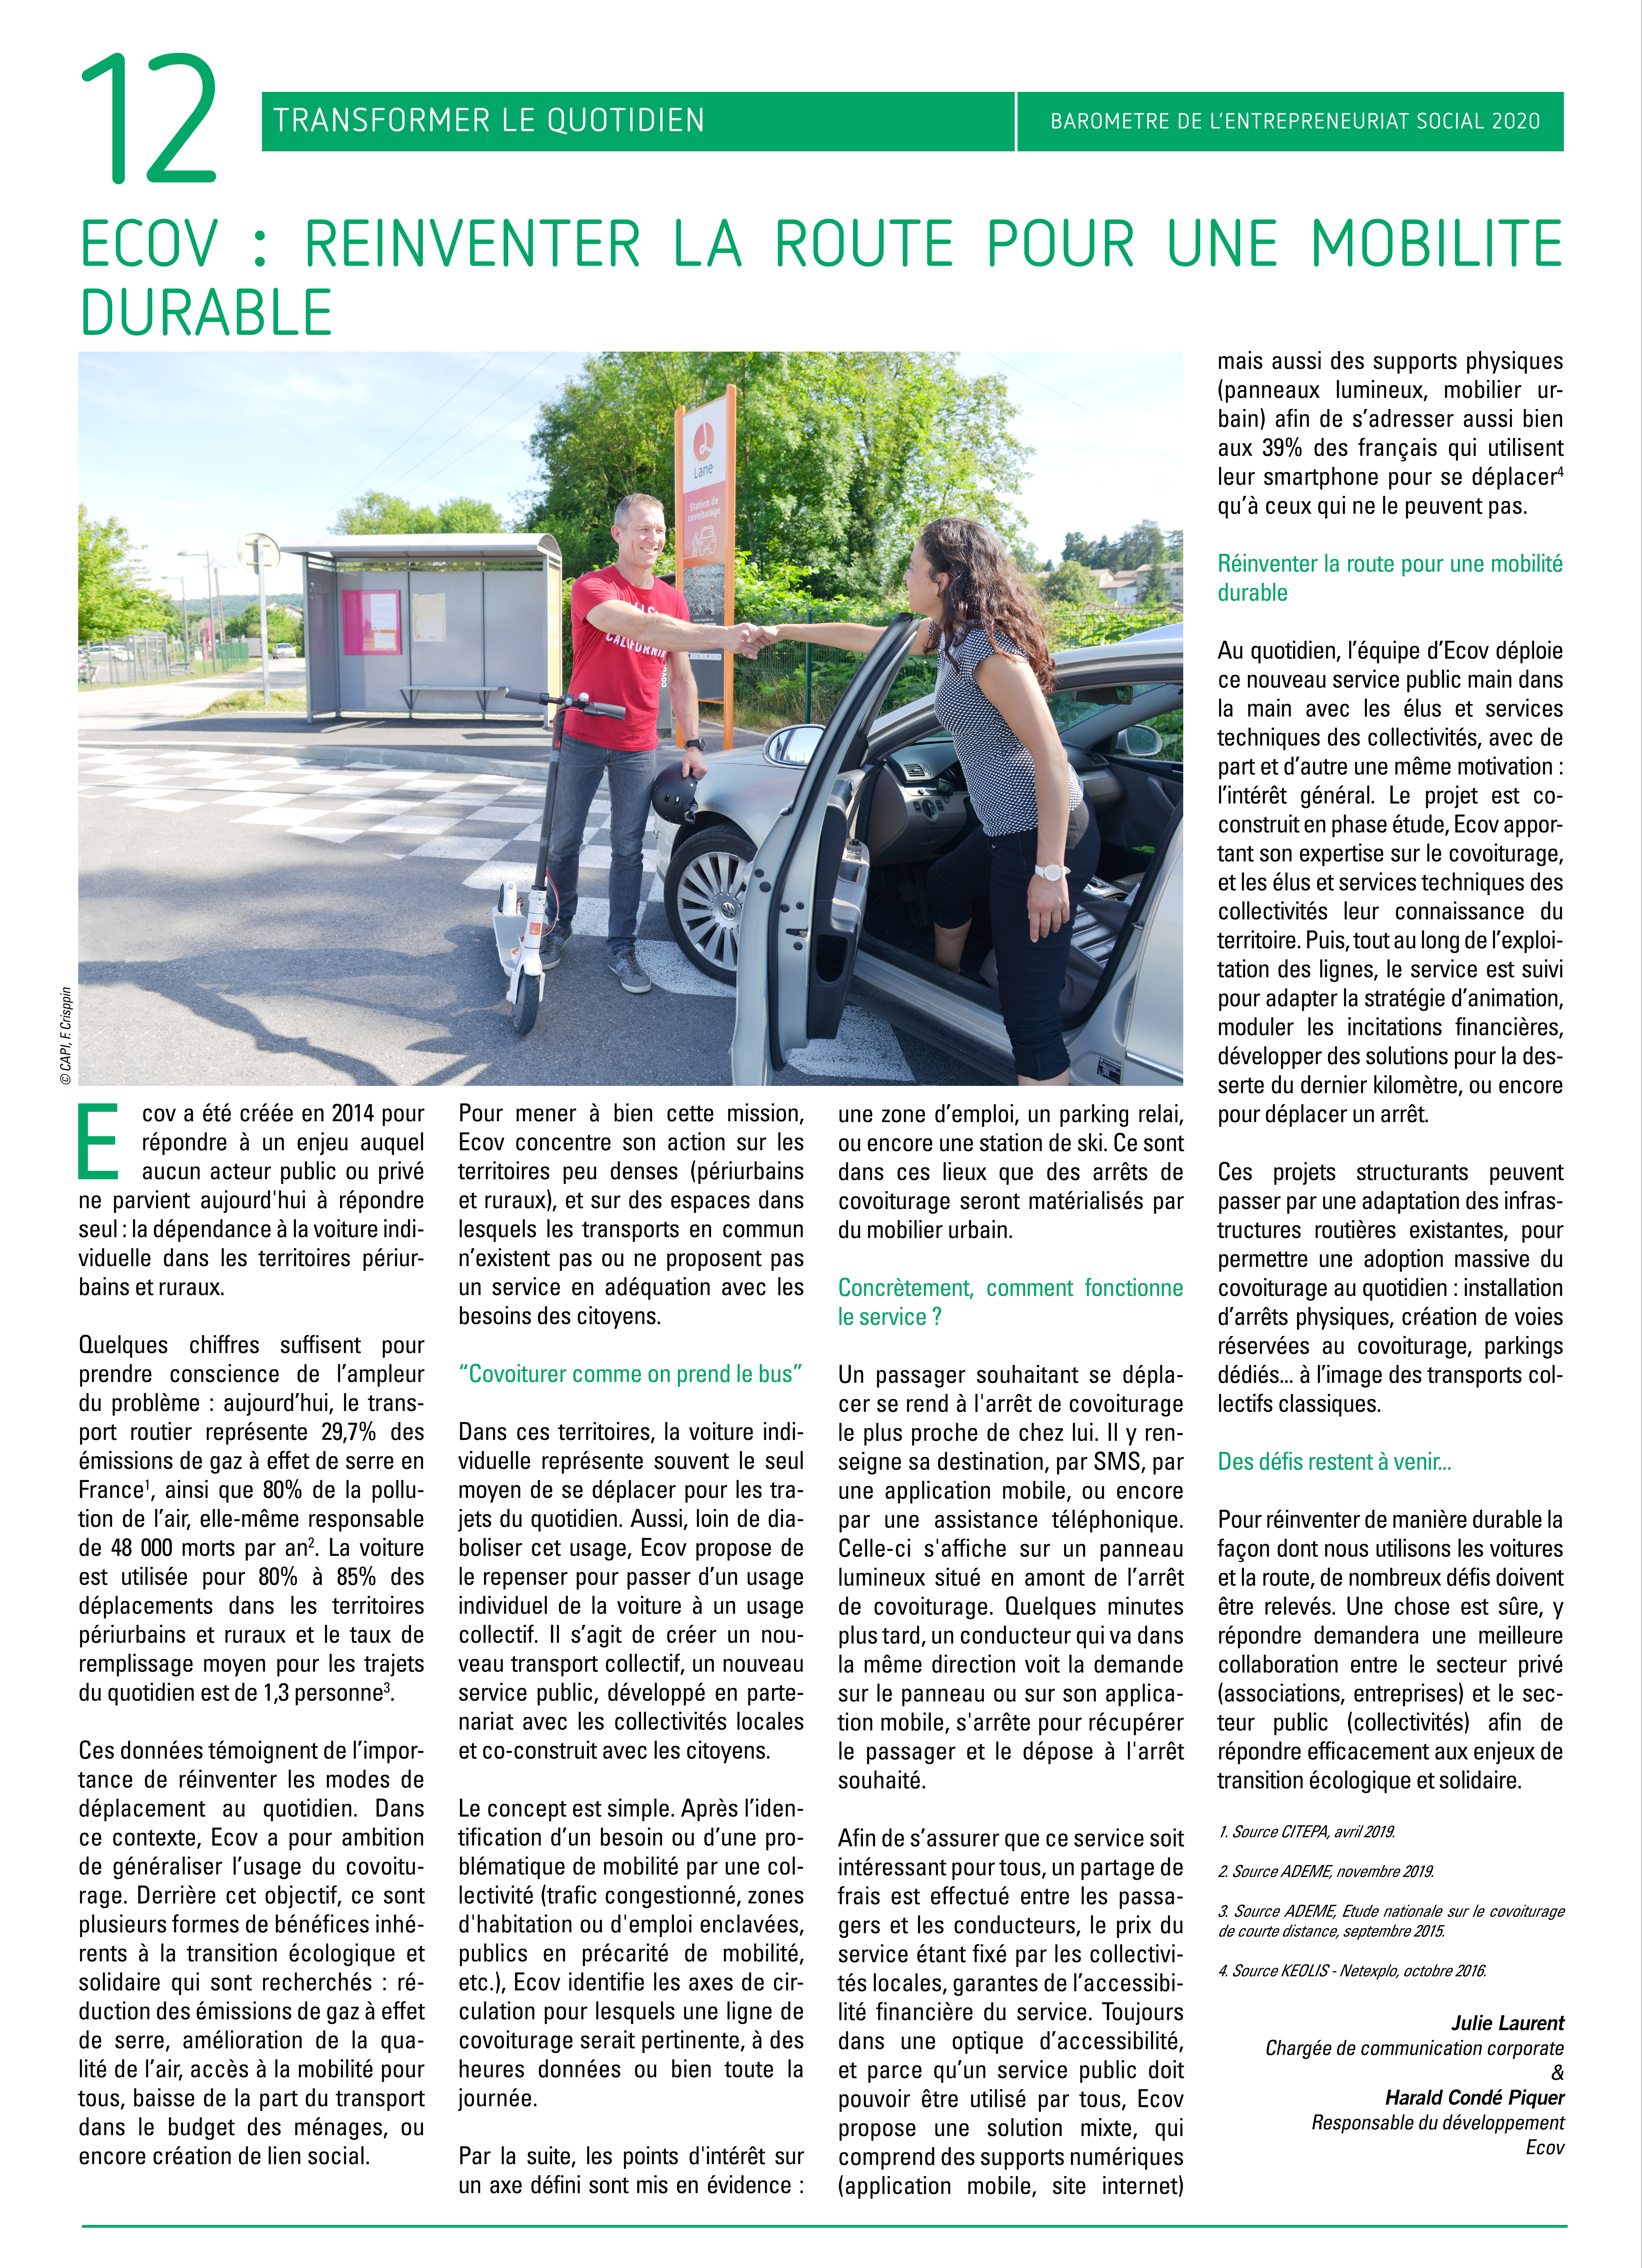 Ecov : réinventer la route pour une mobilité durable